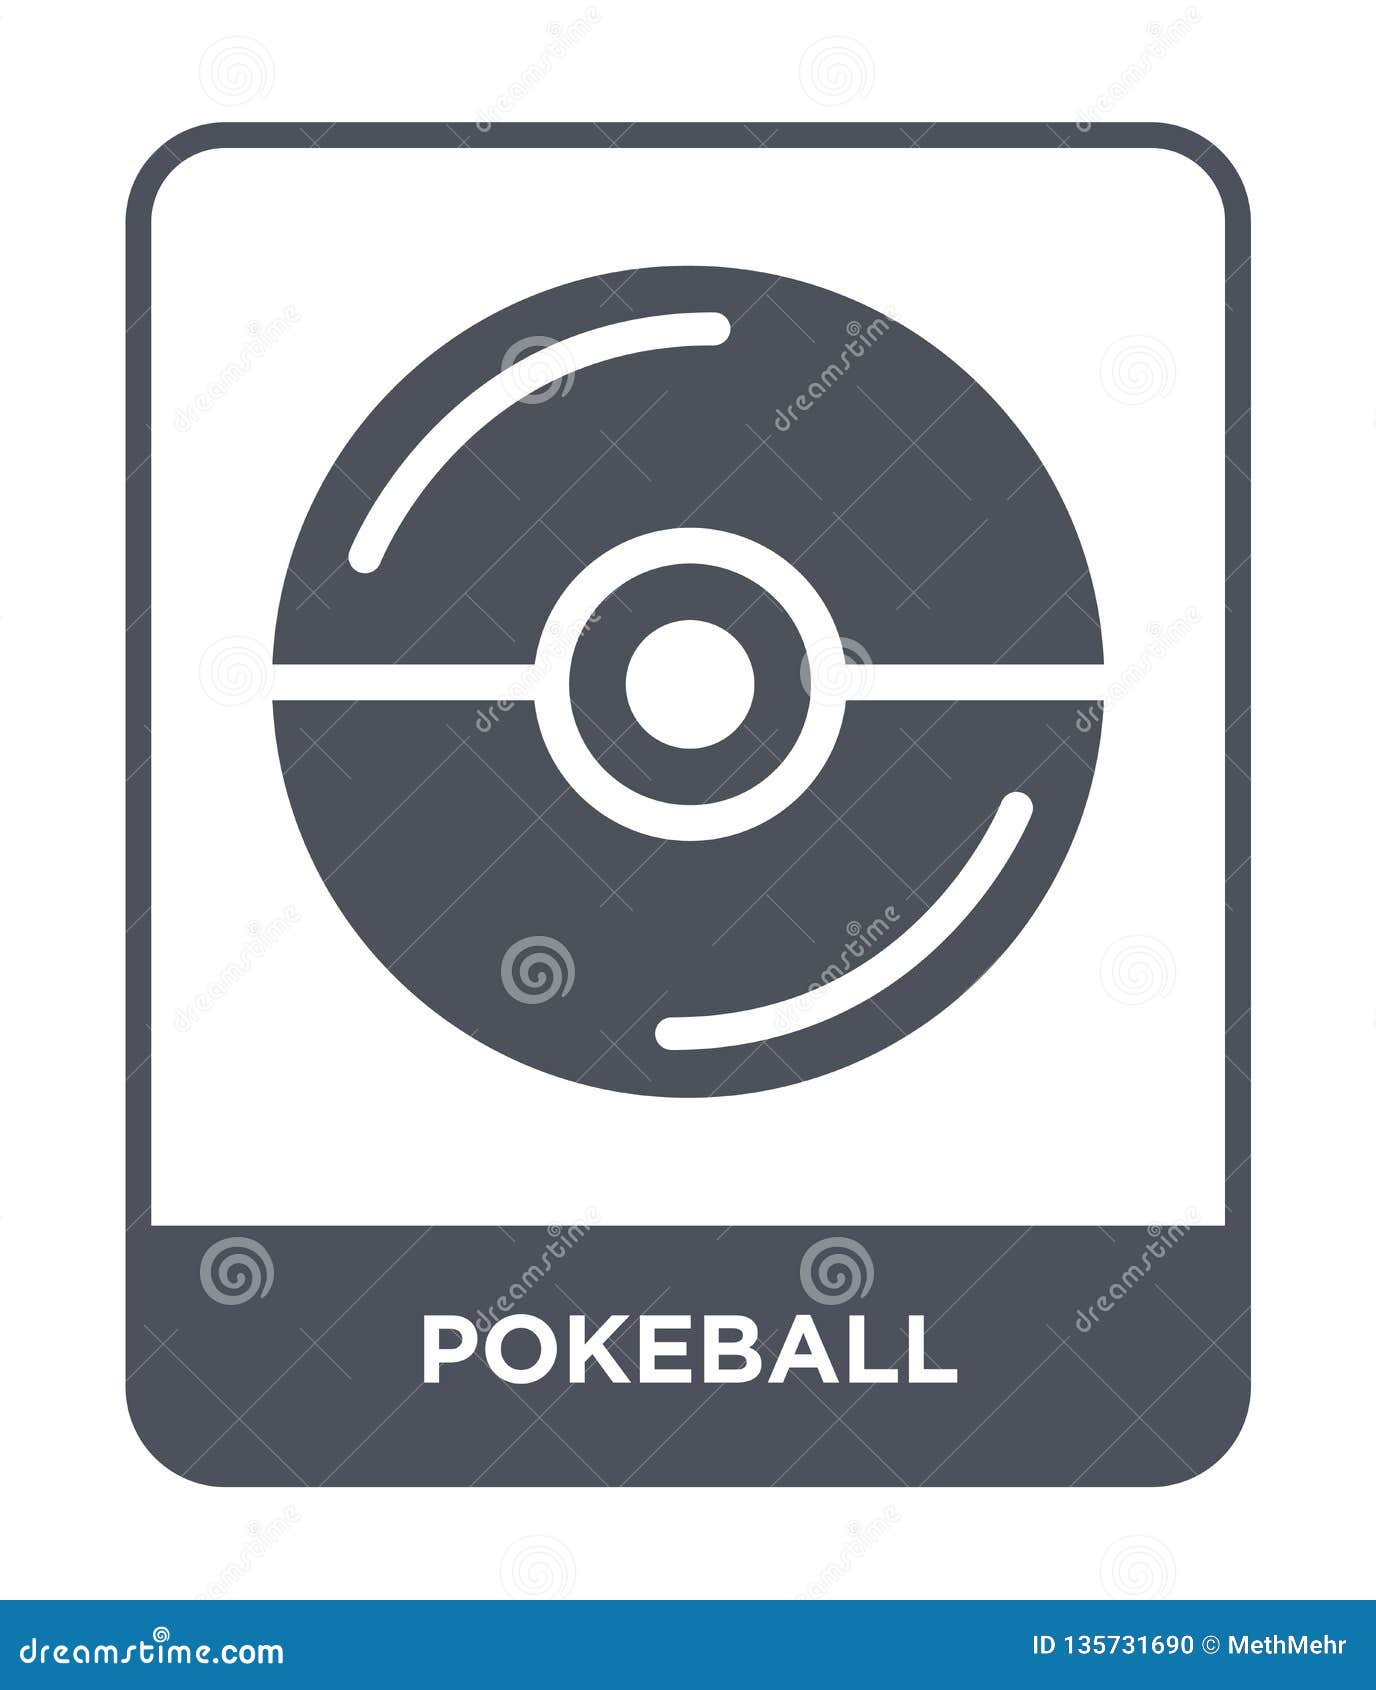 Pokeball Logo Isolated on White Background. Editorial Stock Image